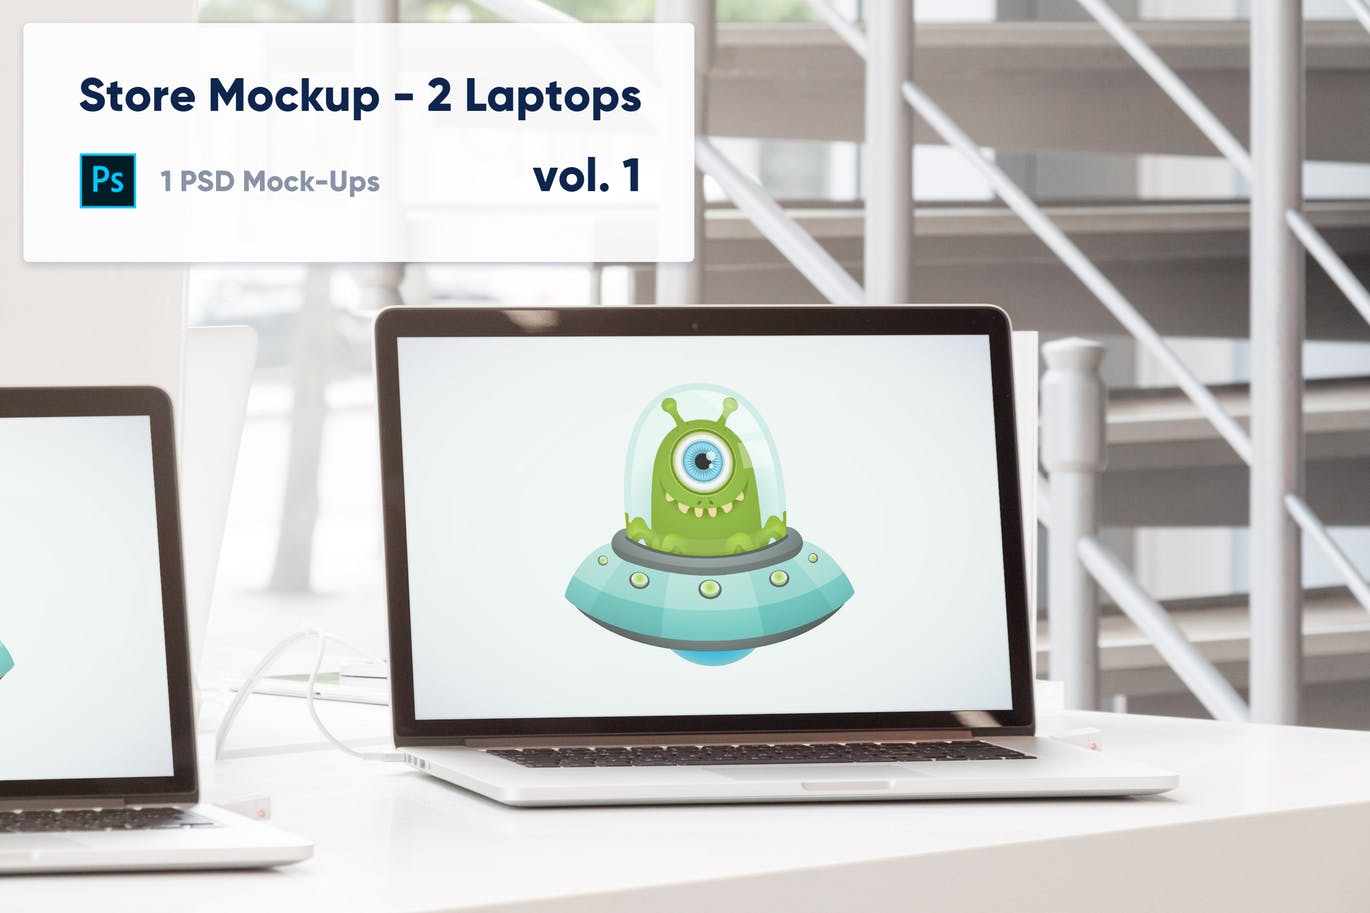 零售店场景笔记本电脑屏幕预览素材库精选样机模板v1 Laptops Mockup in the Store – Vol. 1插图